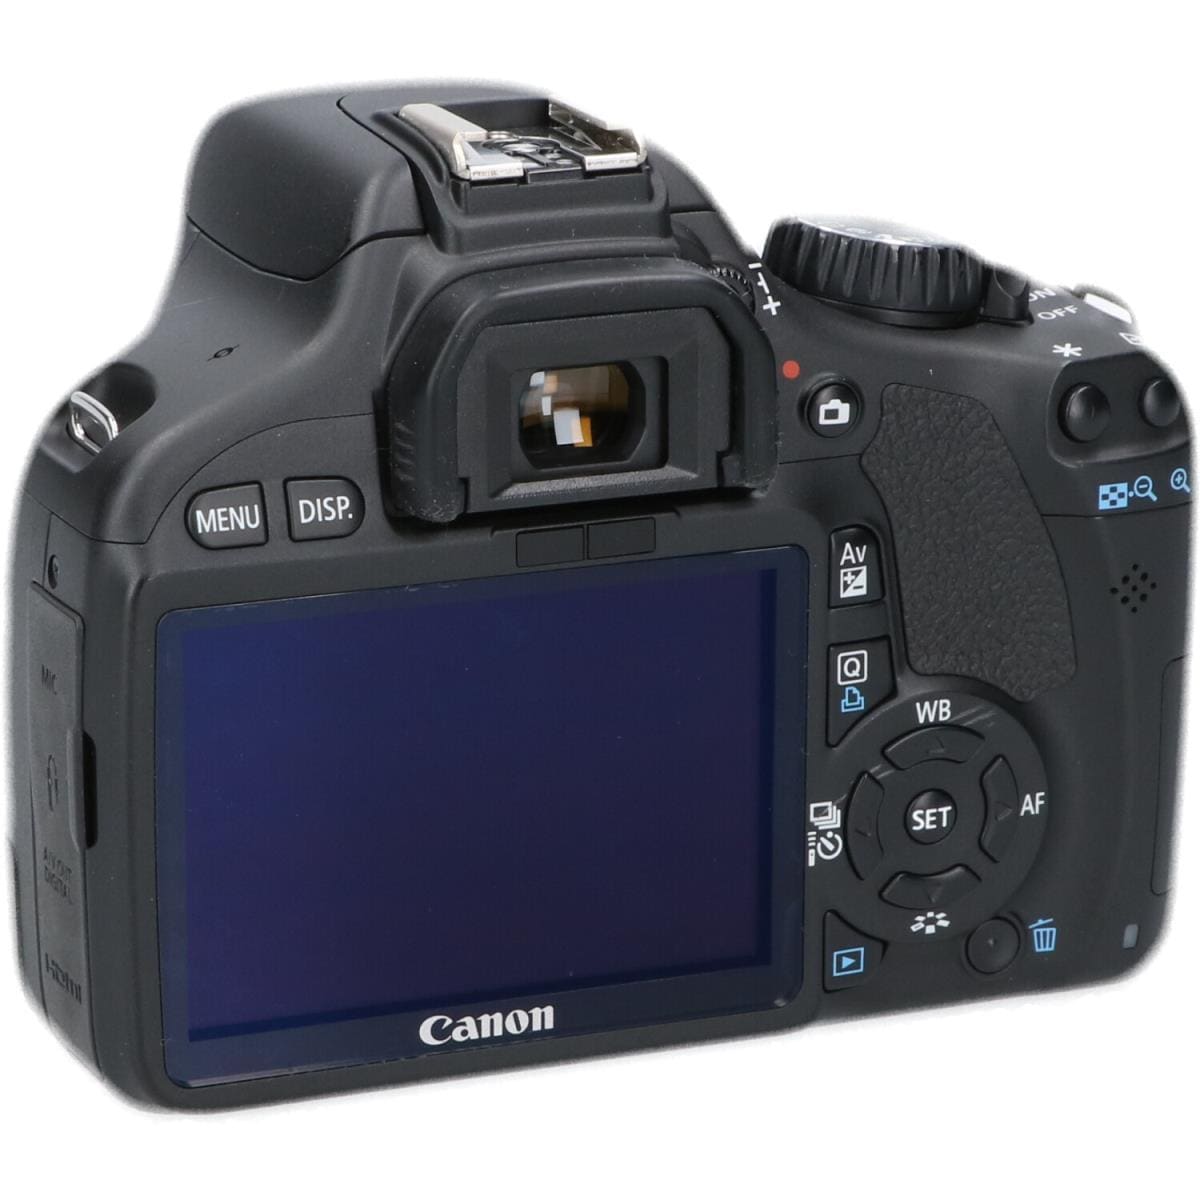 商談中 一眼レフ‼︎ 早い者勝ち！Canon Kiss X4 キャノン カメラ - カメラ